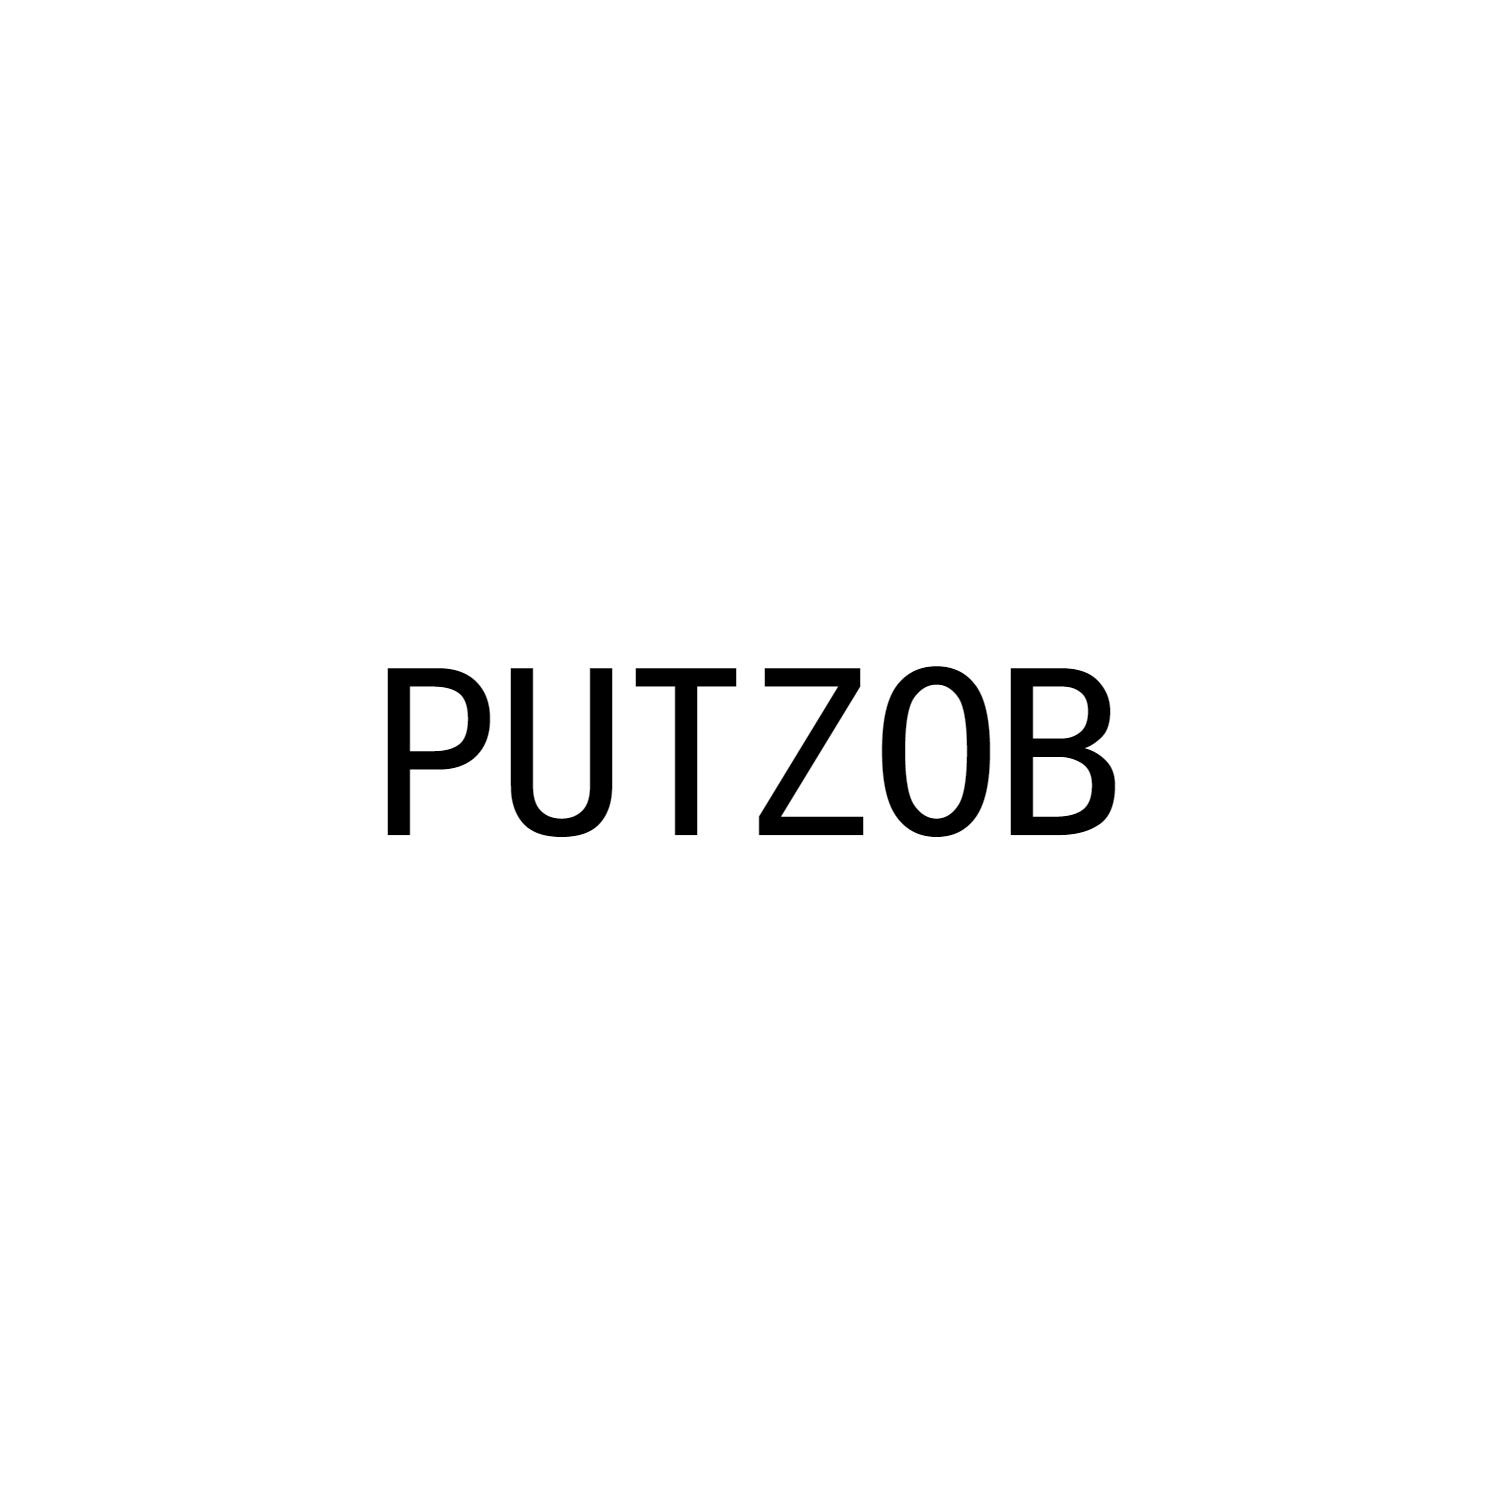 PUTZOB